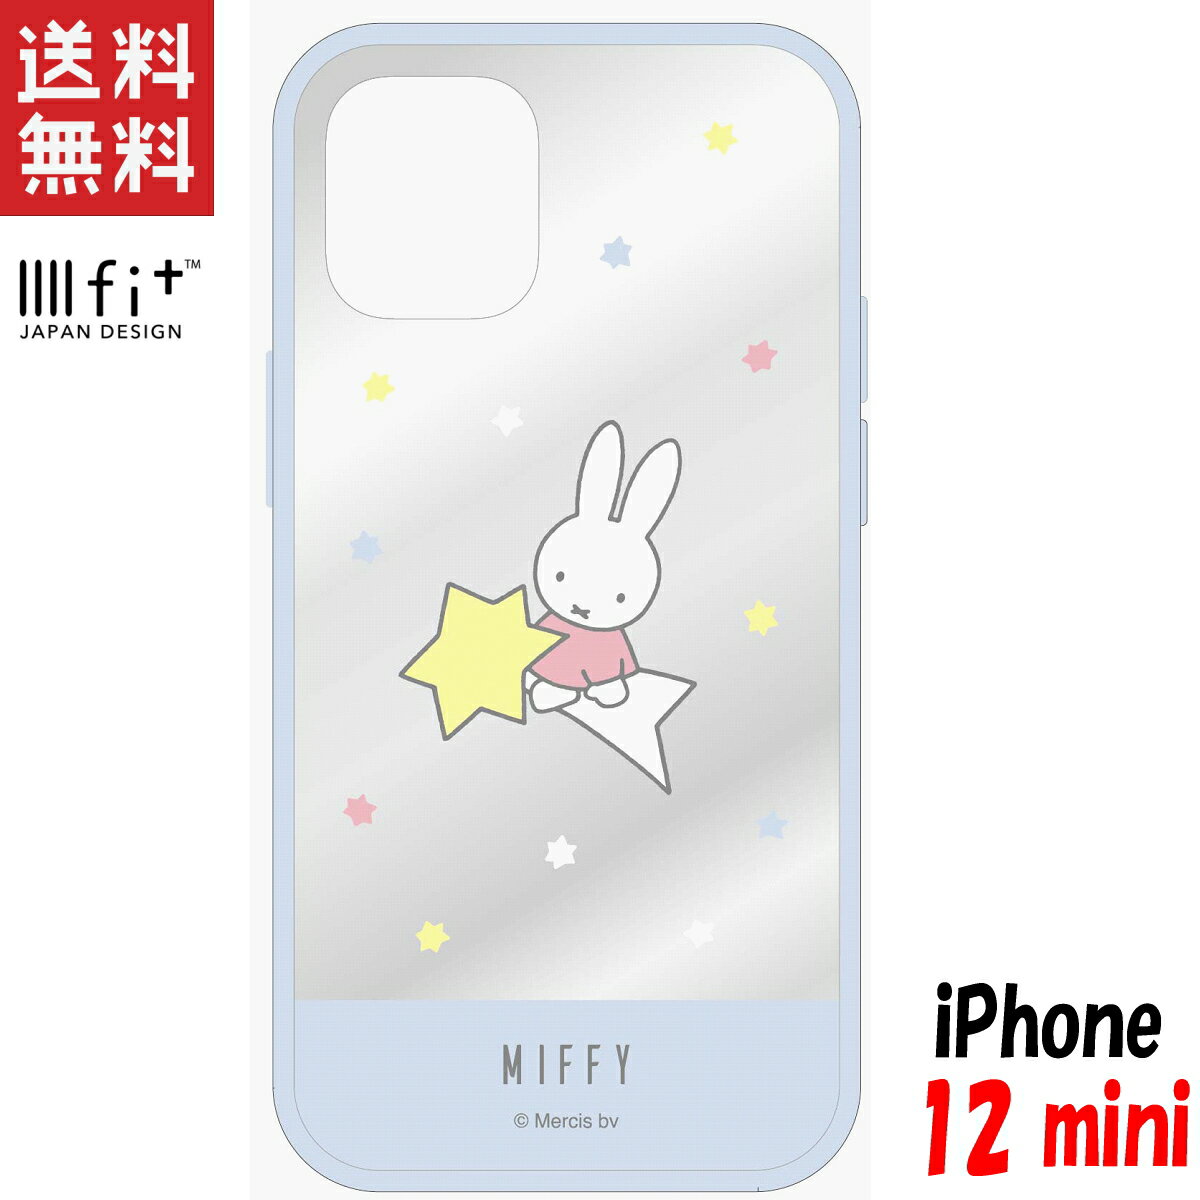 ミッフィー iPhone12 mini ケース イーフィット クリア IIIIfit Clear キャラクター グッズ 星空 MF-108BL